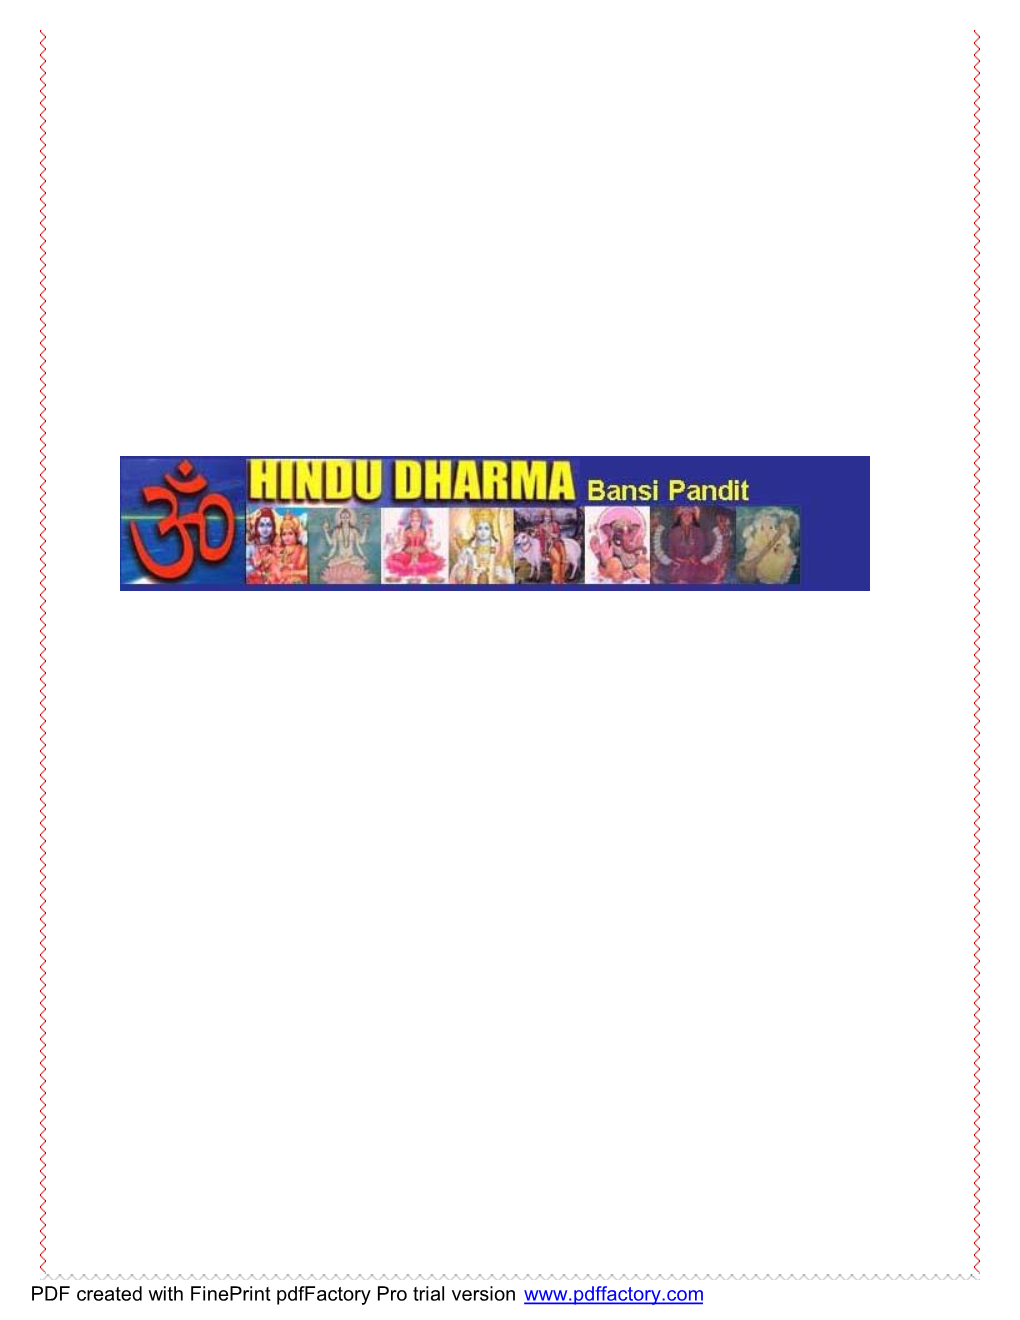 Hindu Dharma by Bansi Pandit